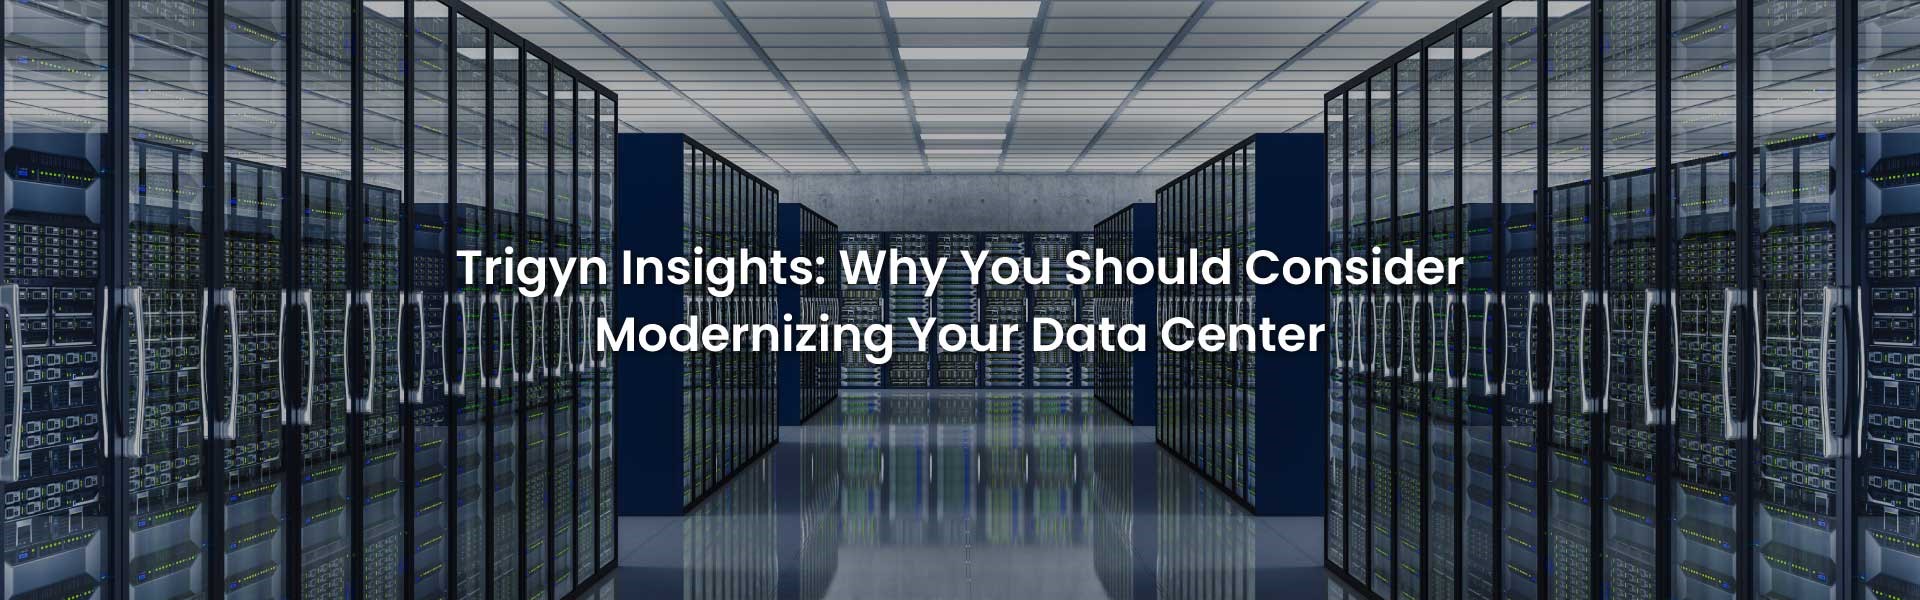 Consider Modernizing Your Data Center